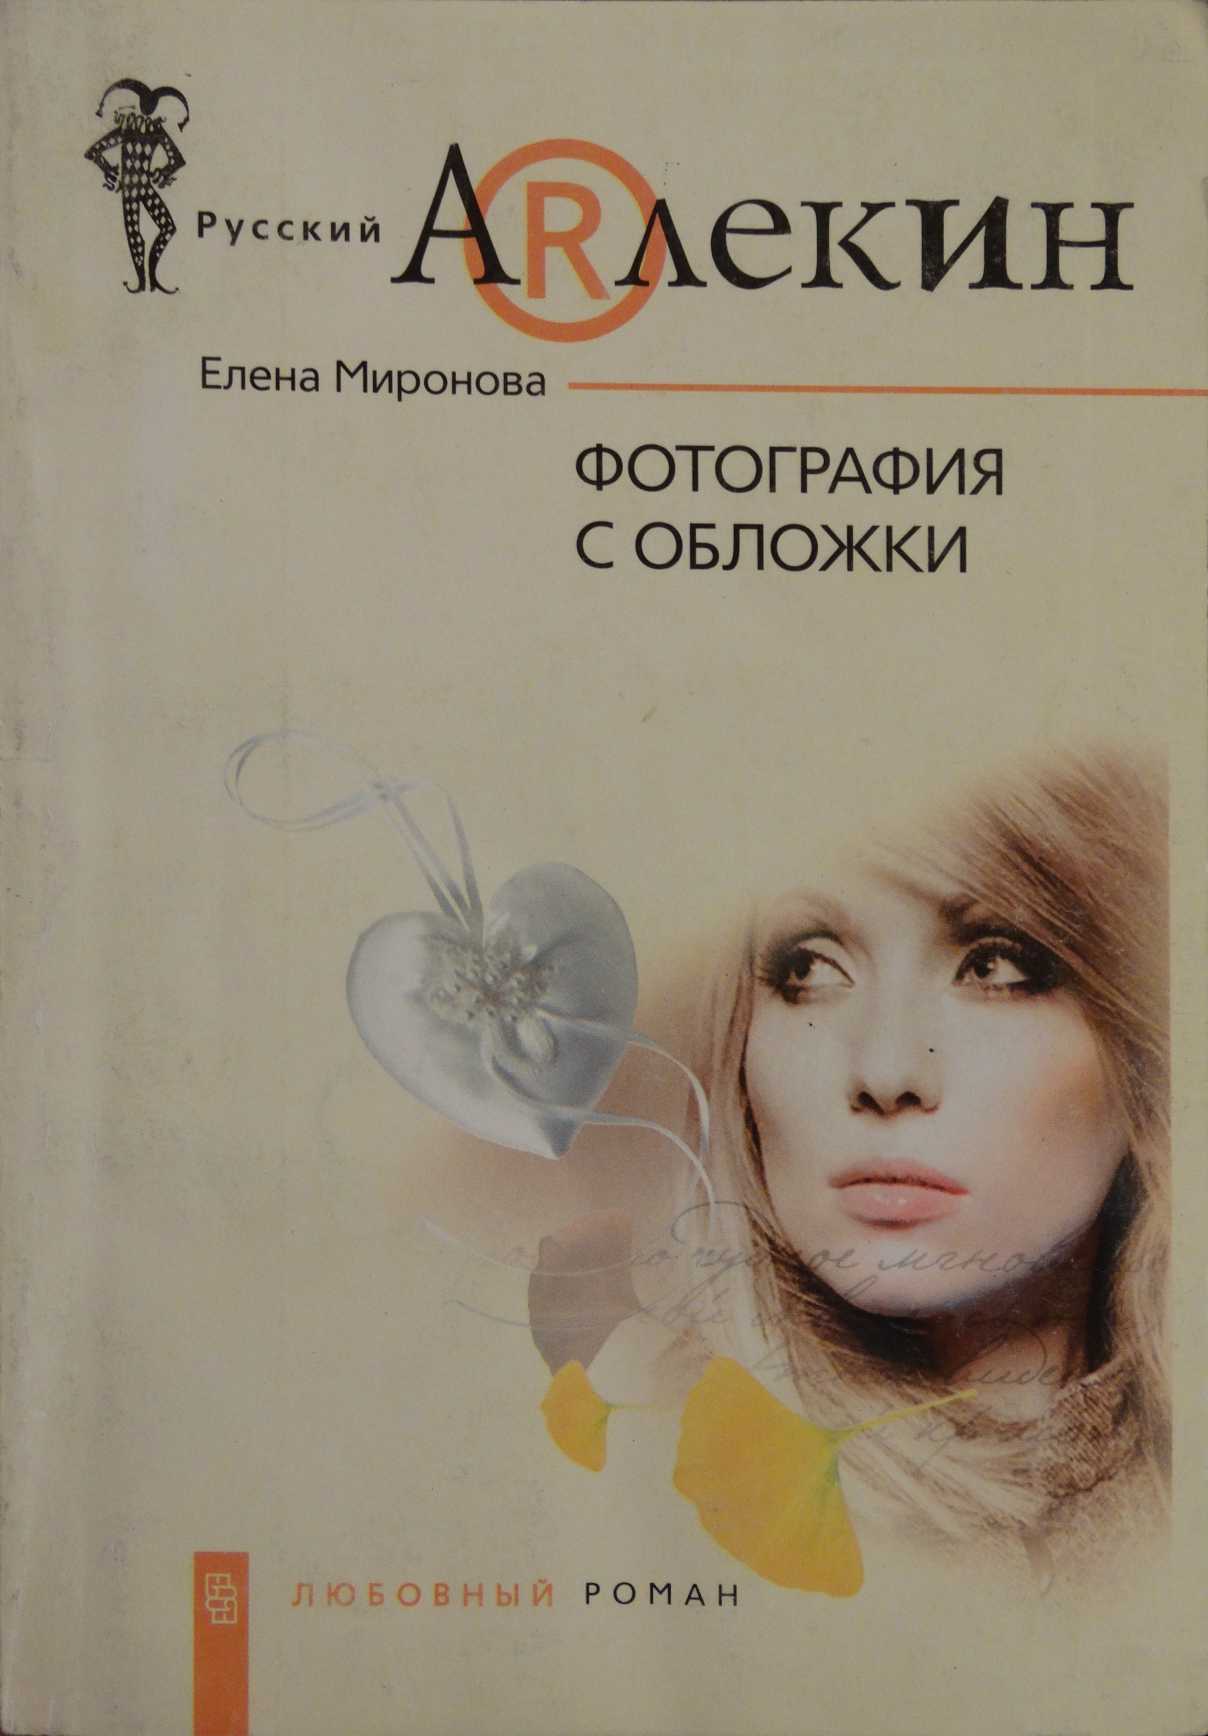 Миронова Елена - Фотография с обложки скачать бесплатно